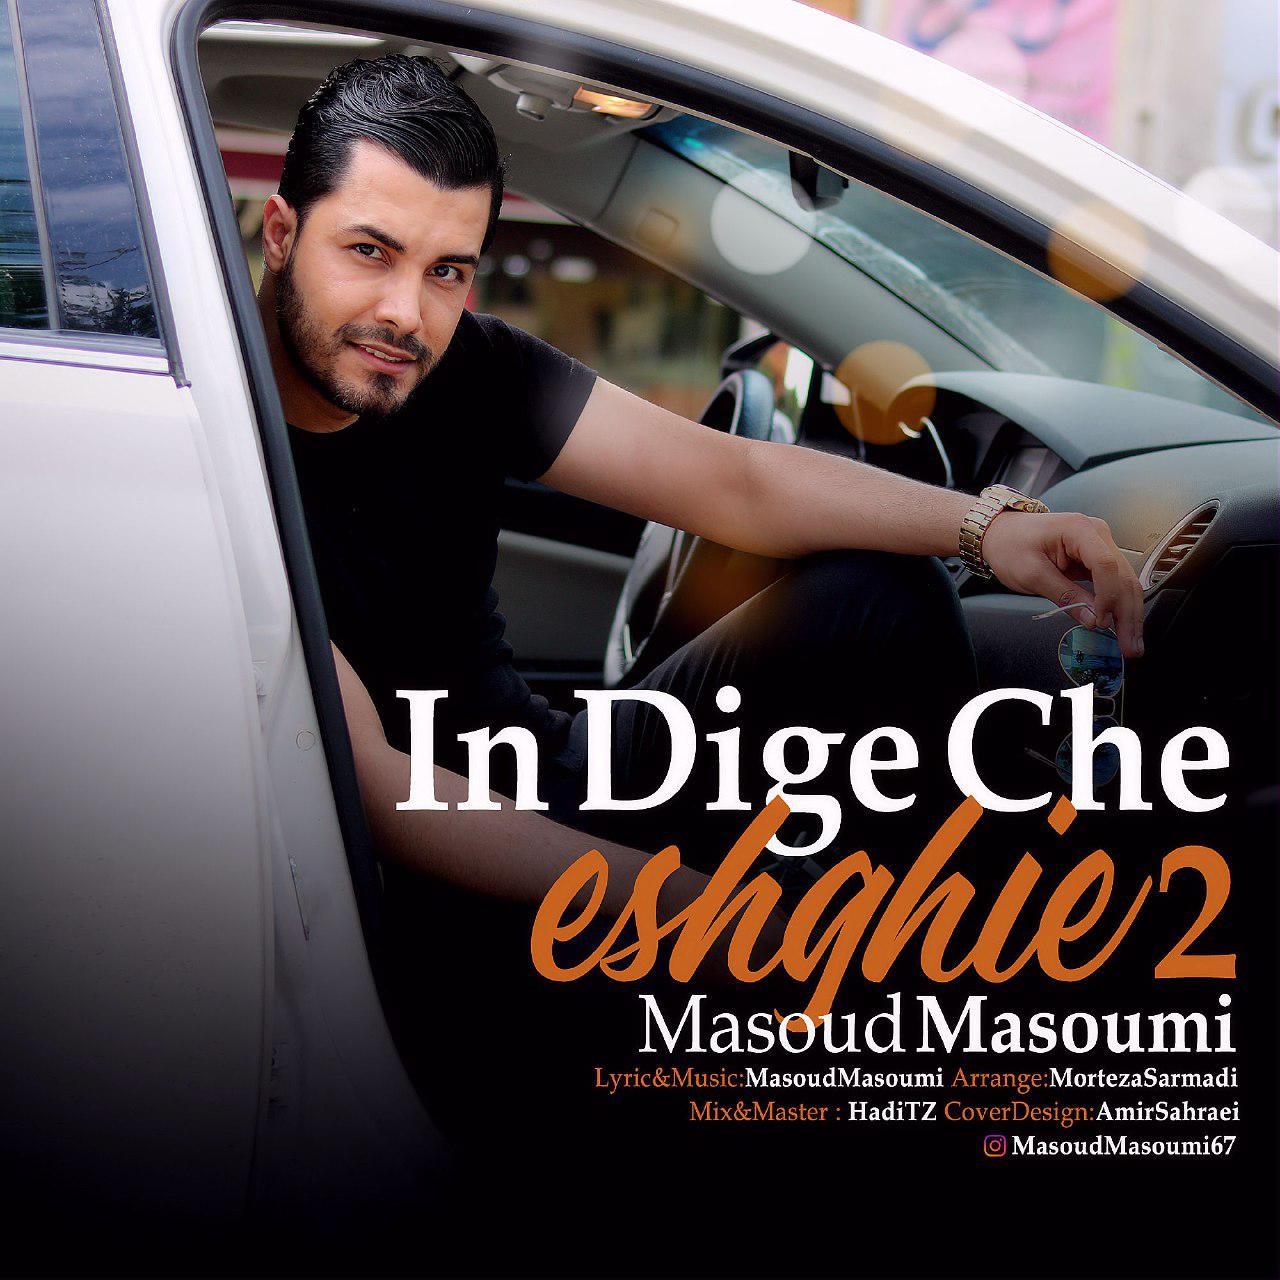 Masoud Masoumi – In Dige Che Eshghie 2